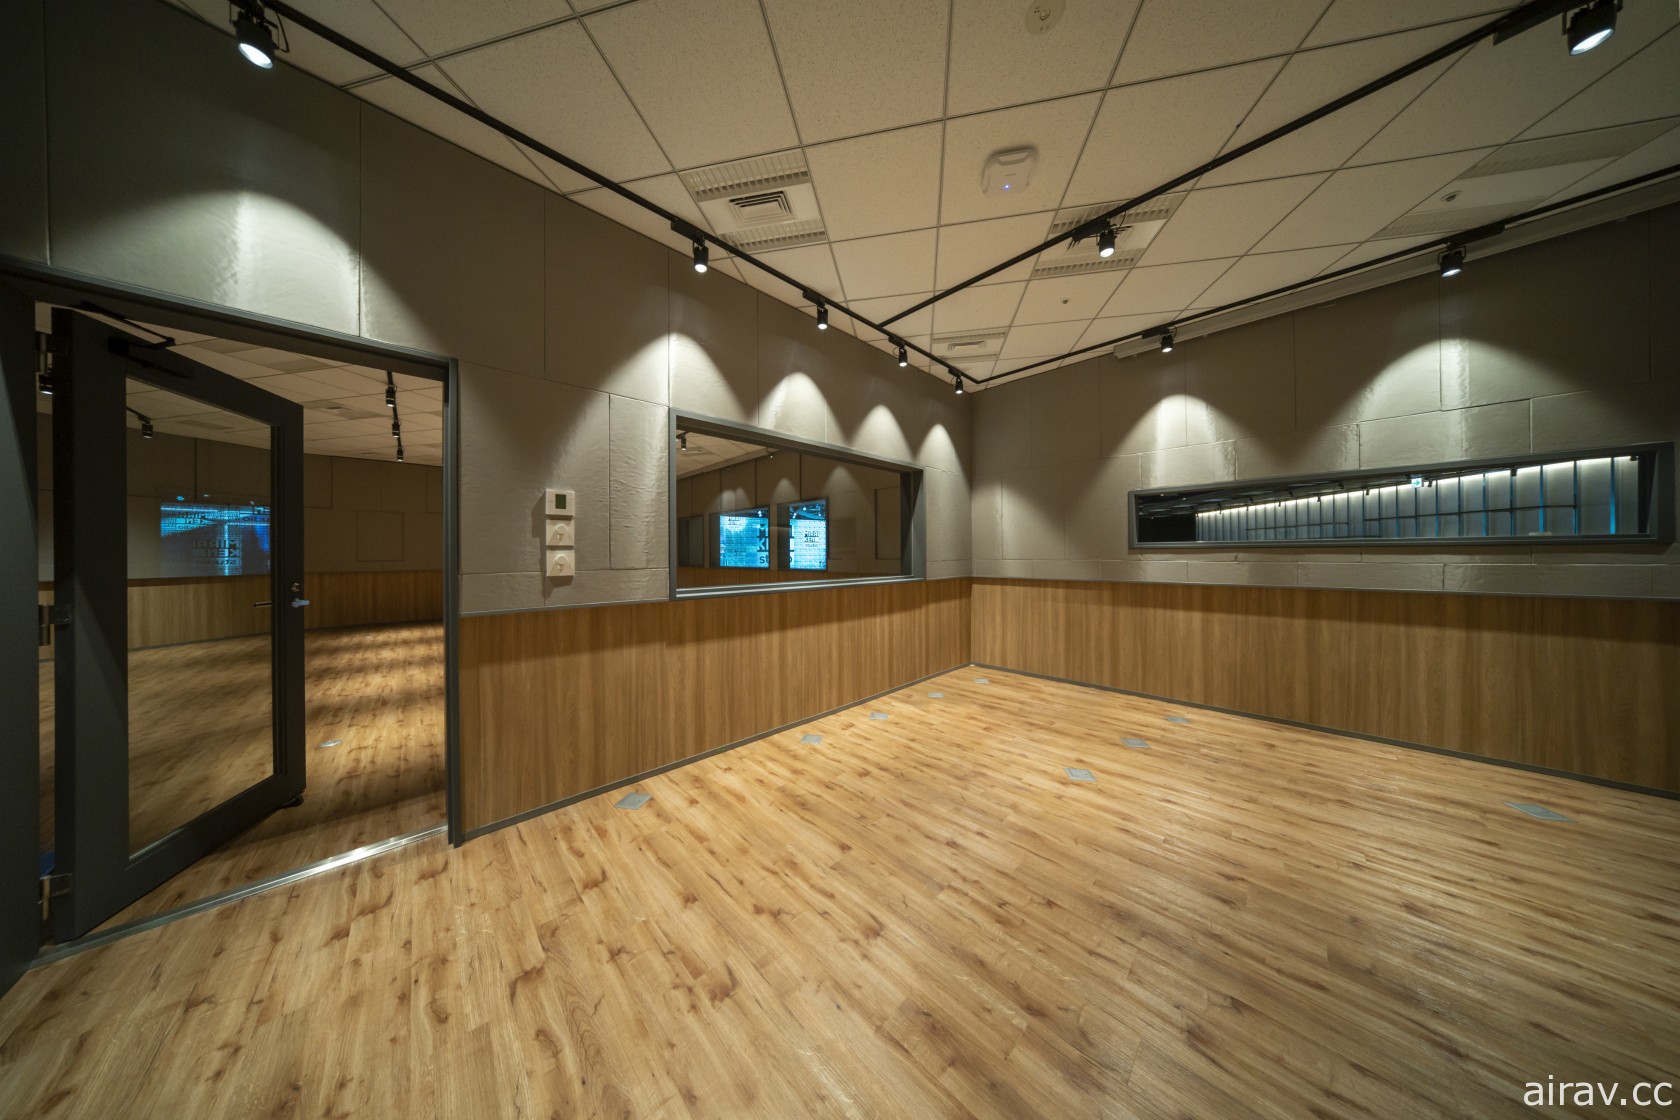 融合現實與虛擬的直播攝影棚 MIRAIKEN studio 開幕 天海春香與藝人同台共演